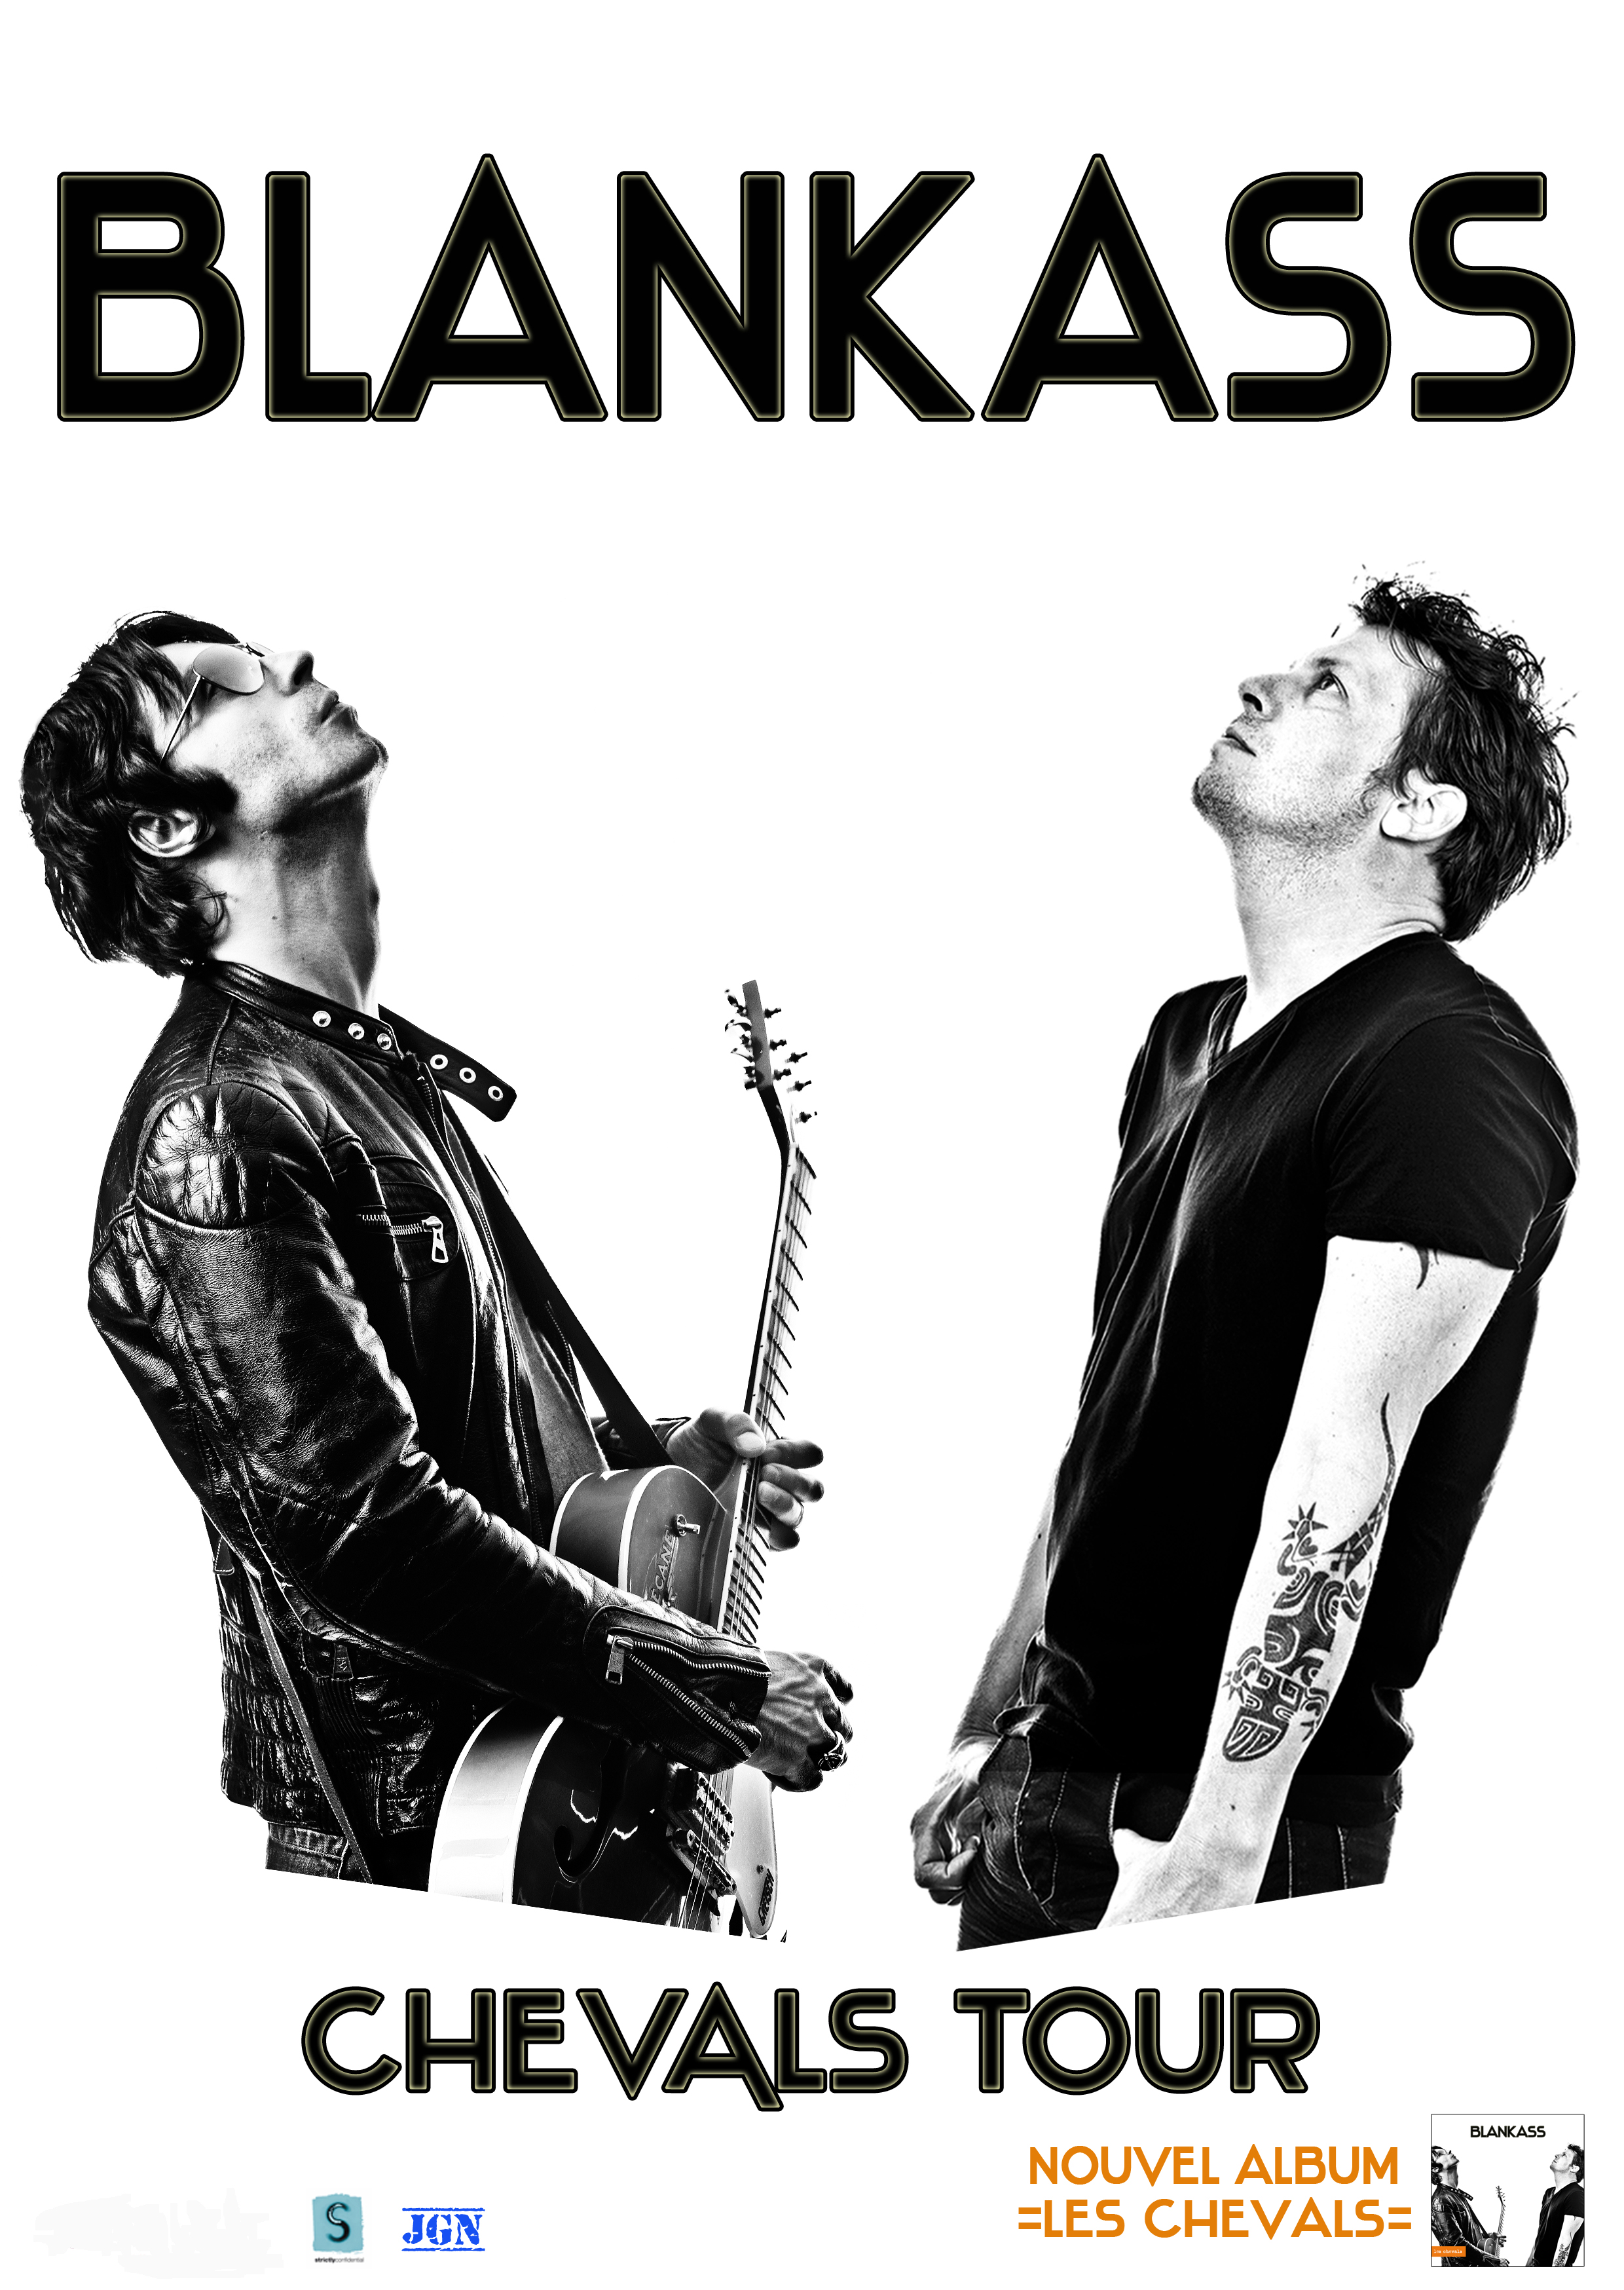 Affiche de la tournée de Blankass Chevals Tour 2011-2013